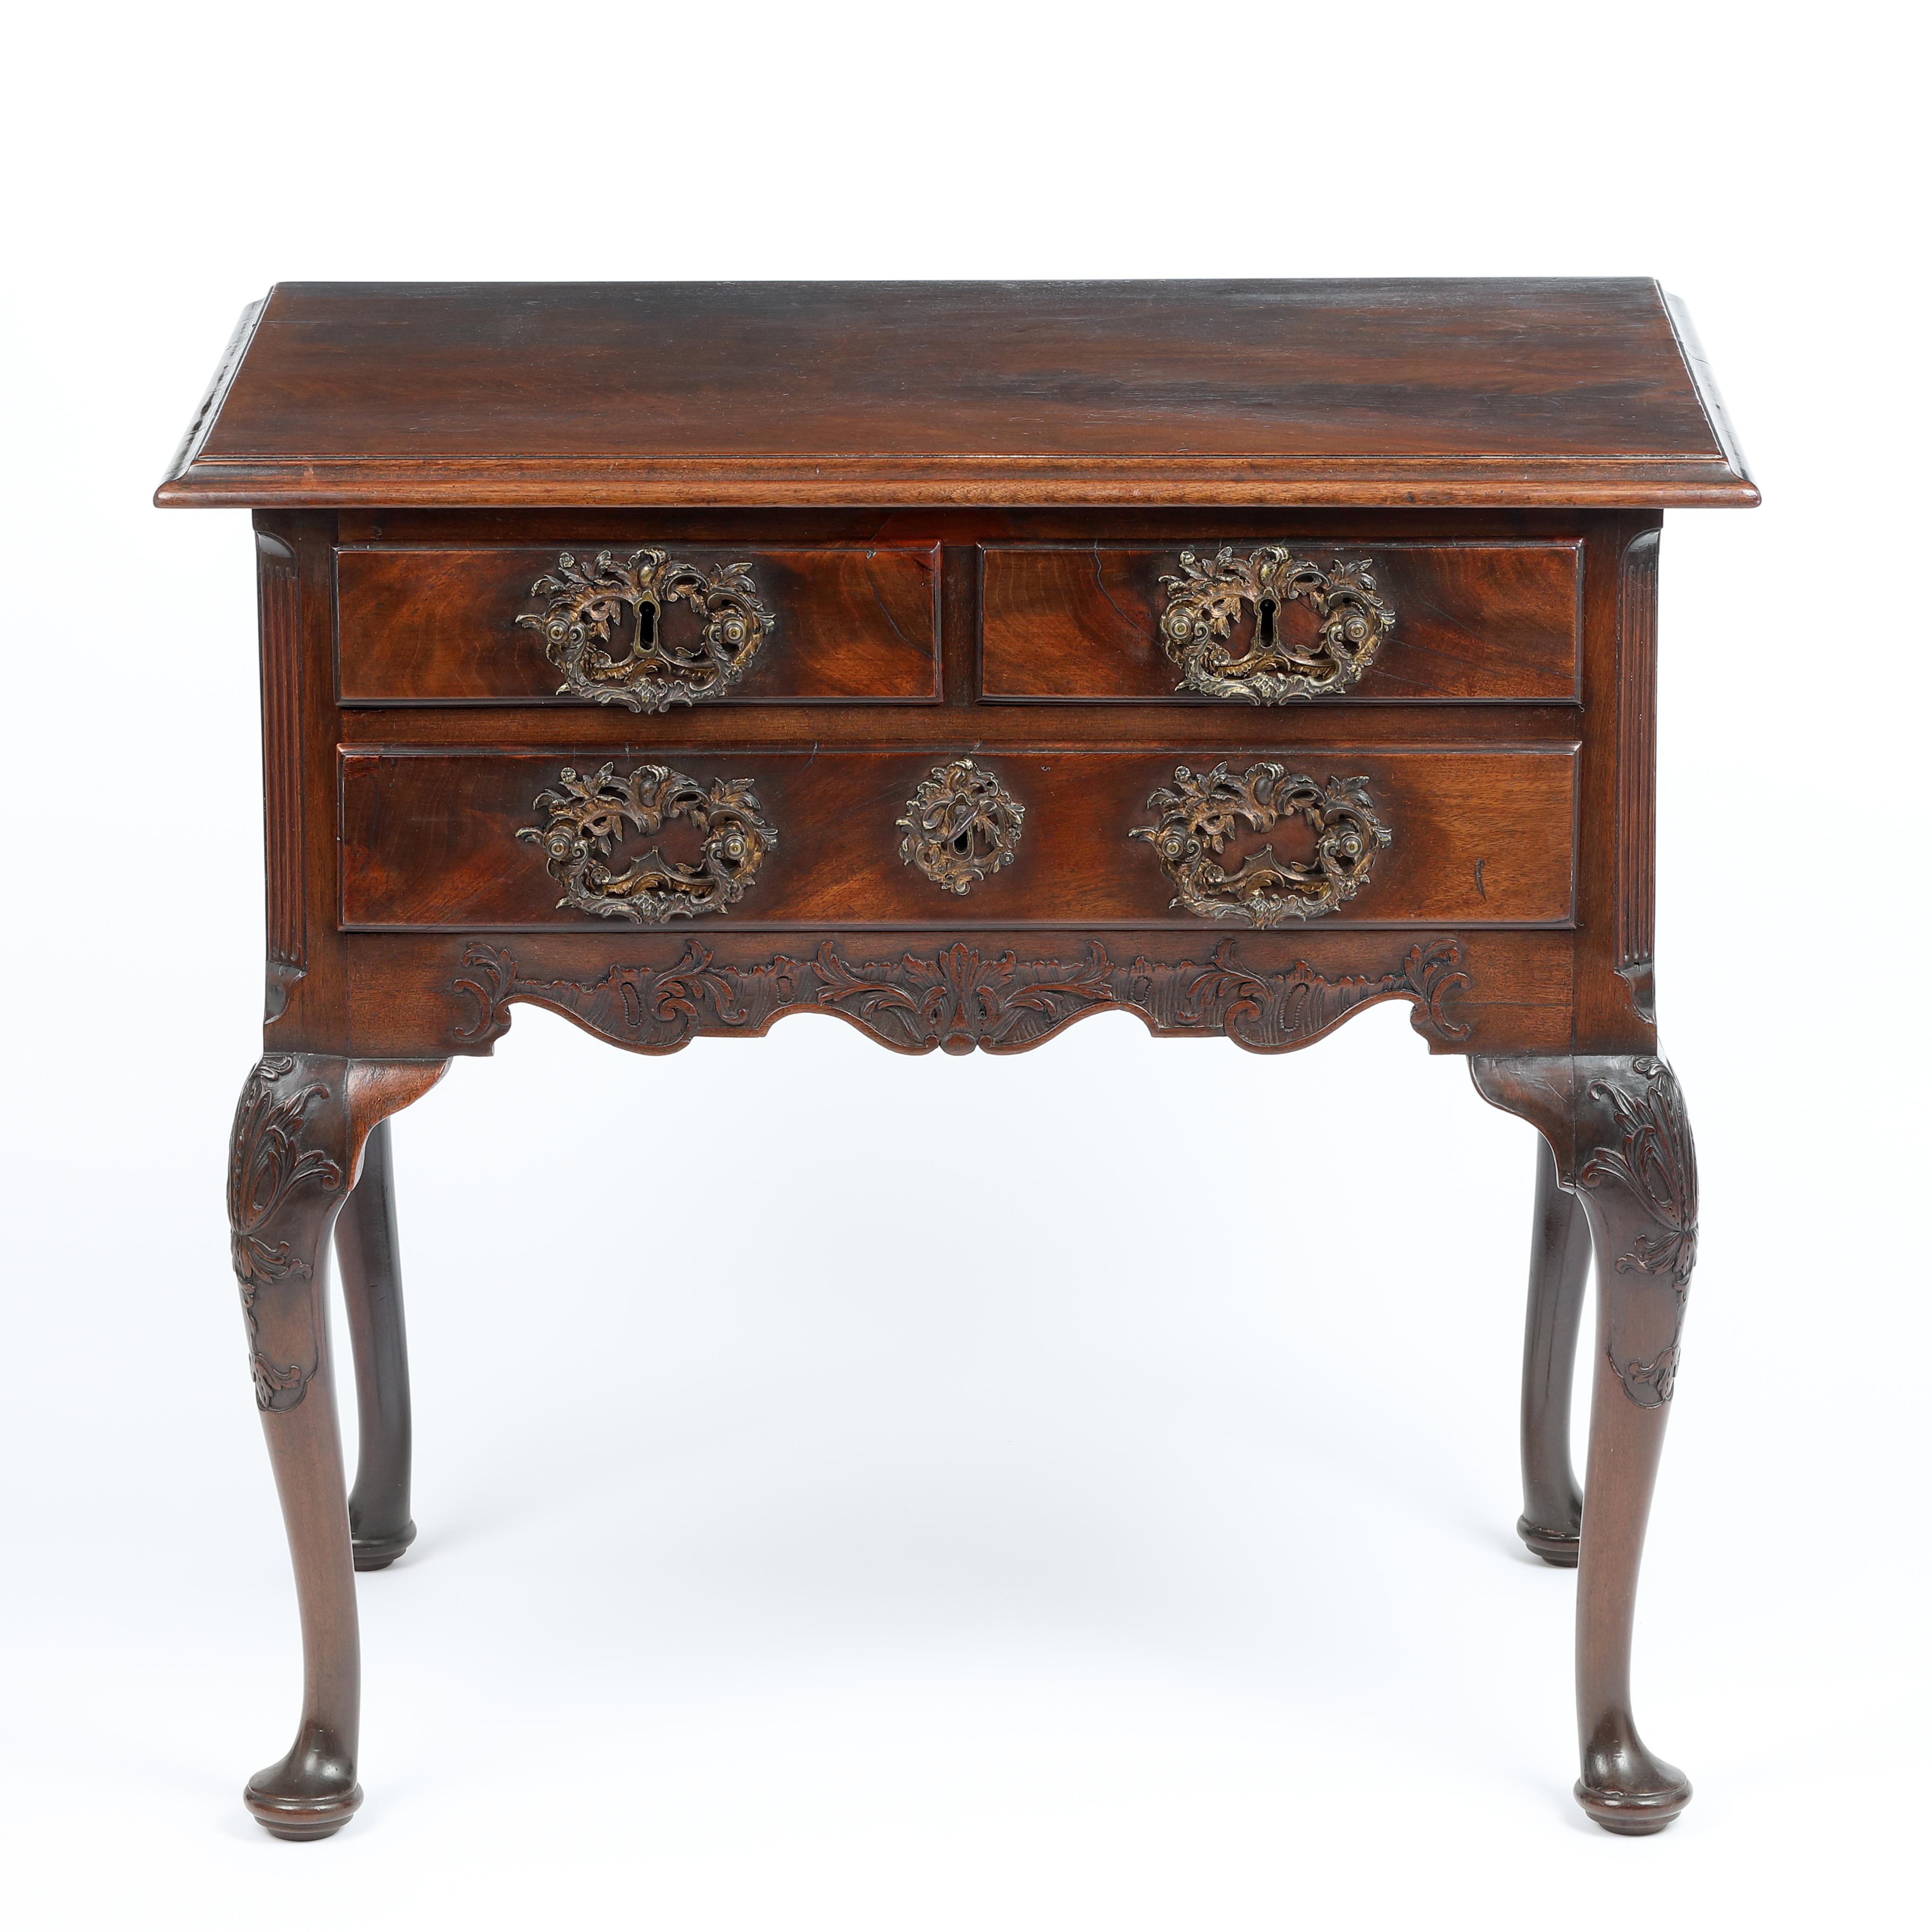 Ein hervorragender und qualitativ hochwertiger Lowboy aus der Mitte des 18. Jahrhunderts mit reizvollen kleinen Proportionen und perfekter Balance.
Dieses spektakuläre Möbelstück mit fein geschnitzten Verzierungen repräsentiert den Höhepunkt der